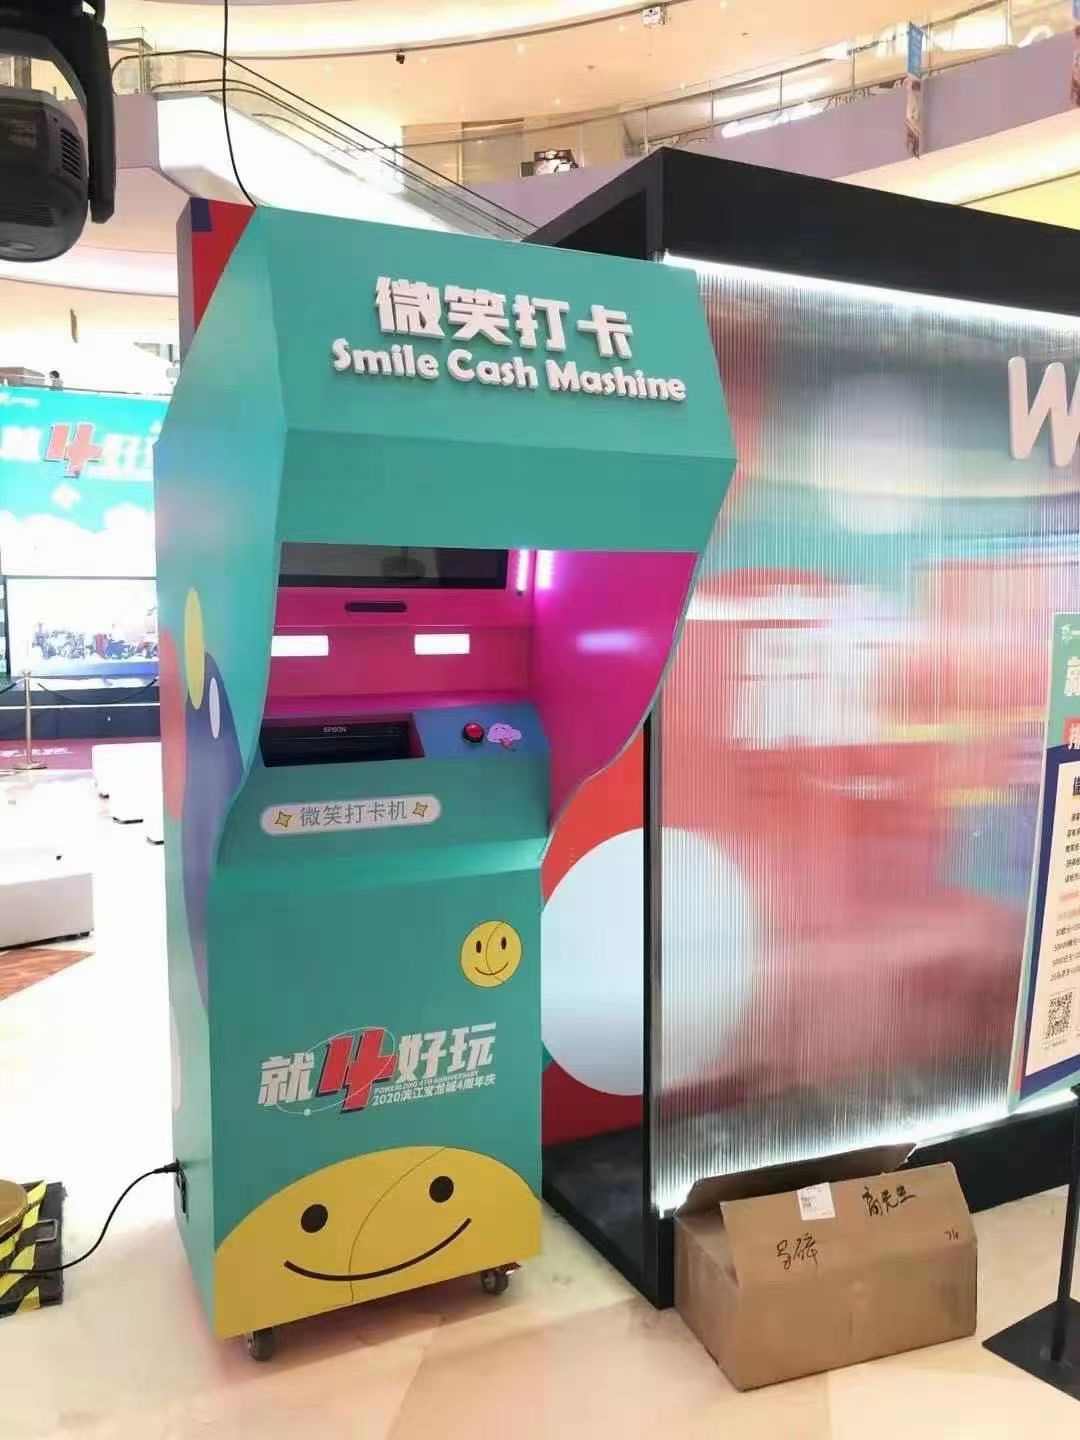 上海微笑提款机微笑可以当钱花商场景区笑容提款机互动装置租赁